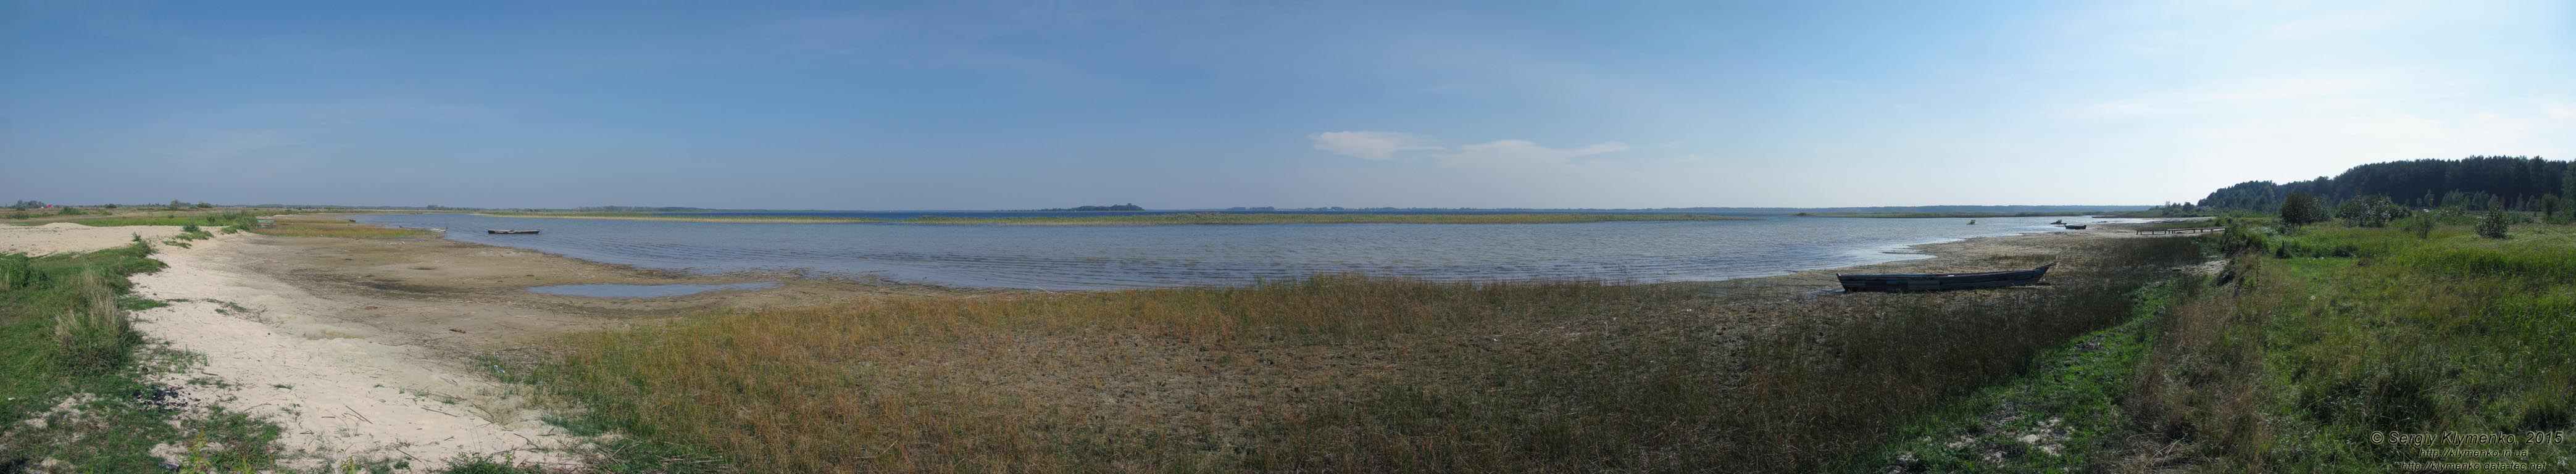 Волынь, Шацкие озёра. Фото. Живописный вид озера Свитязь. Панорама ~210° (51°30'03.00"N, 23°47'42.90"E).